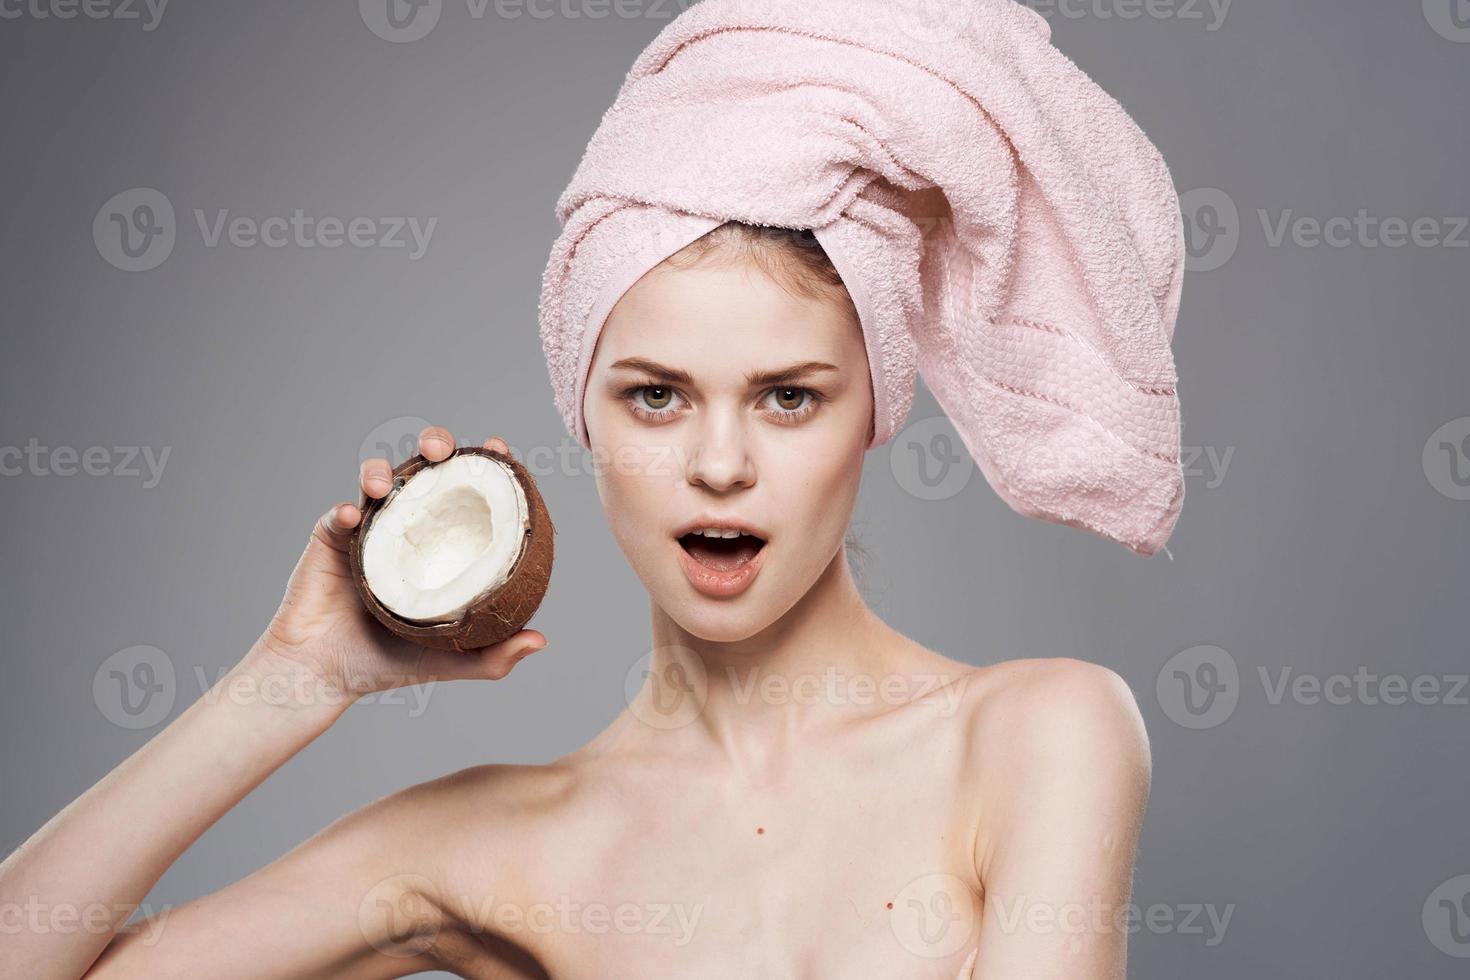 vrouw met naakt schouders met een kokosnoot in haar handen schoon huid exotisch natuurlijk schoonheidsmiddelen grijs achtergrond foto